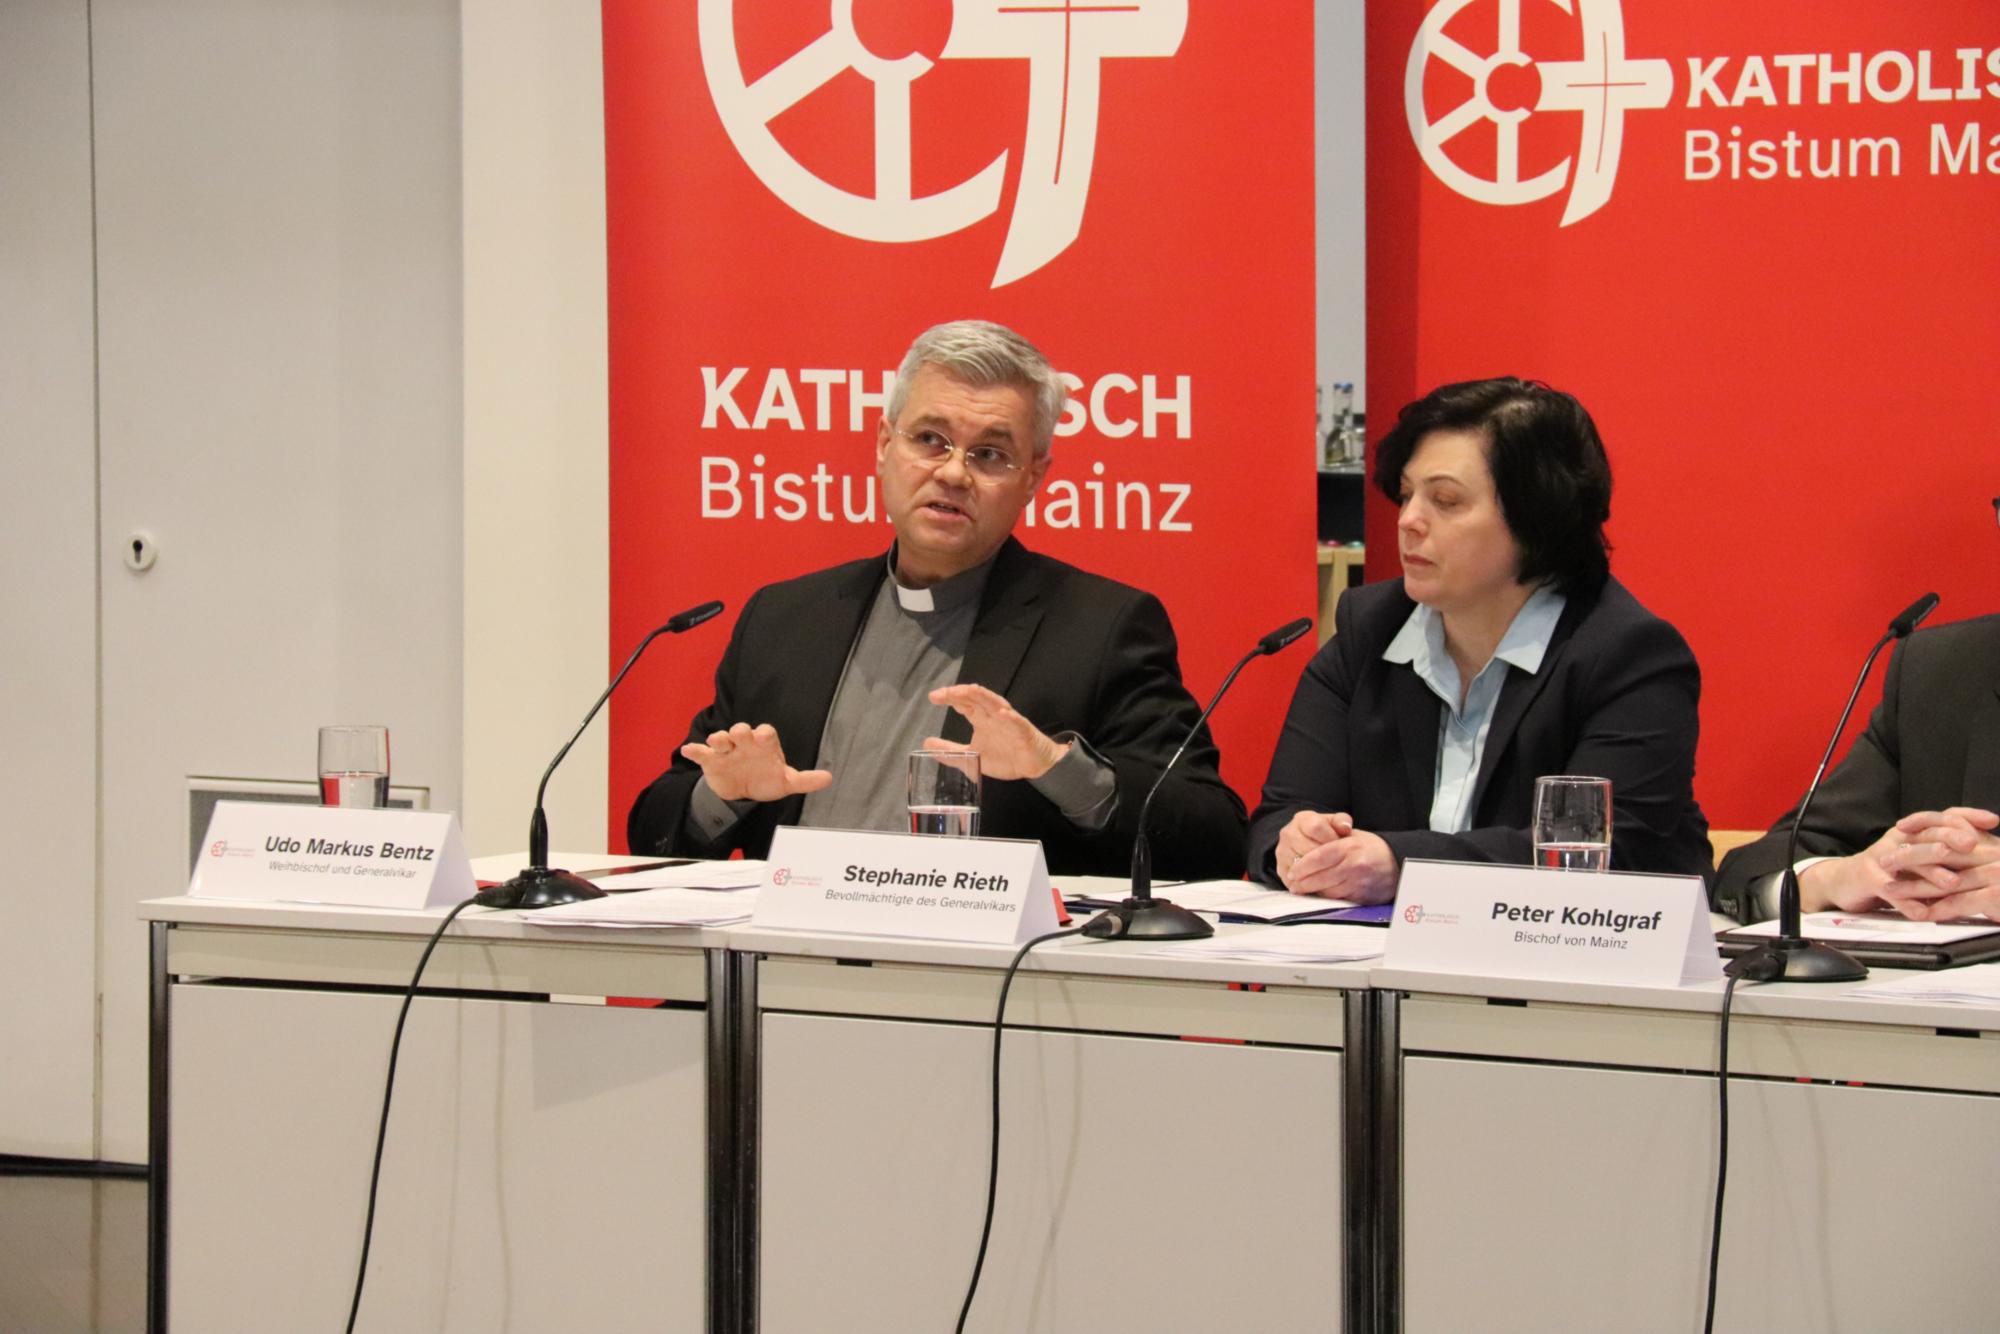 Stellungnahme von Weihbischof und Generalvikar Dr. Udo Markus Bentz während der Pressekonferenz am Mittwoch, 8. März, Erbacher Hof, Mainz (c) Bistum Mainz/Hoffmann